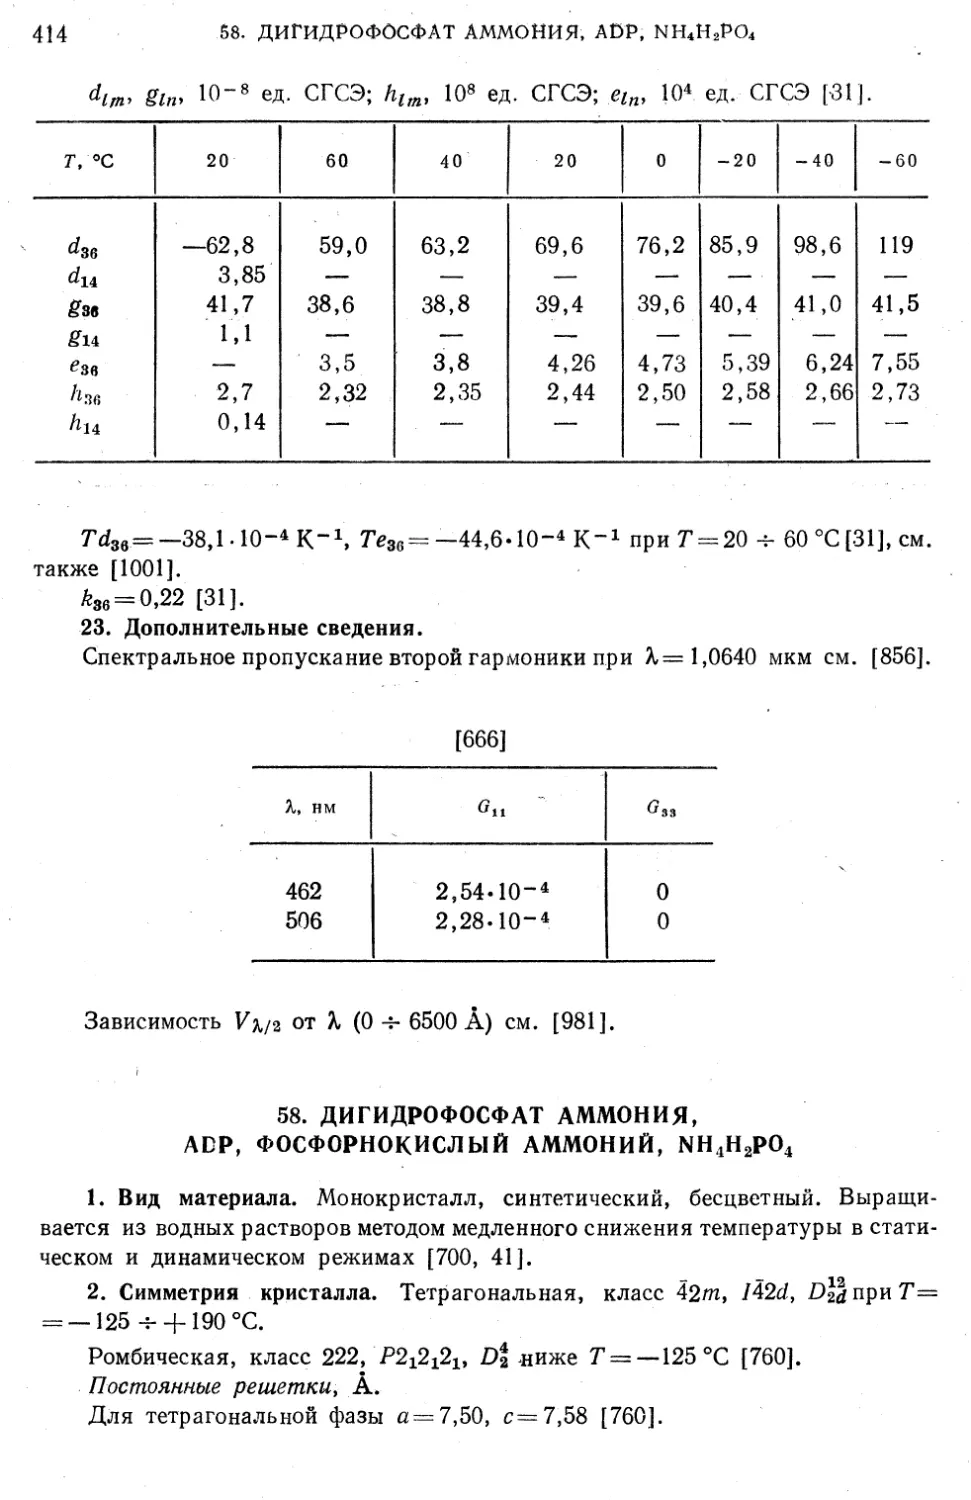 58. Дигидрофосфат аммония, ADP, фосфорнокислый аммоний, NH₄H₂PO₄